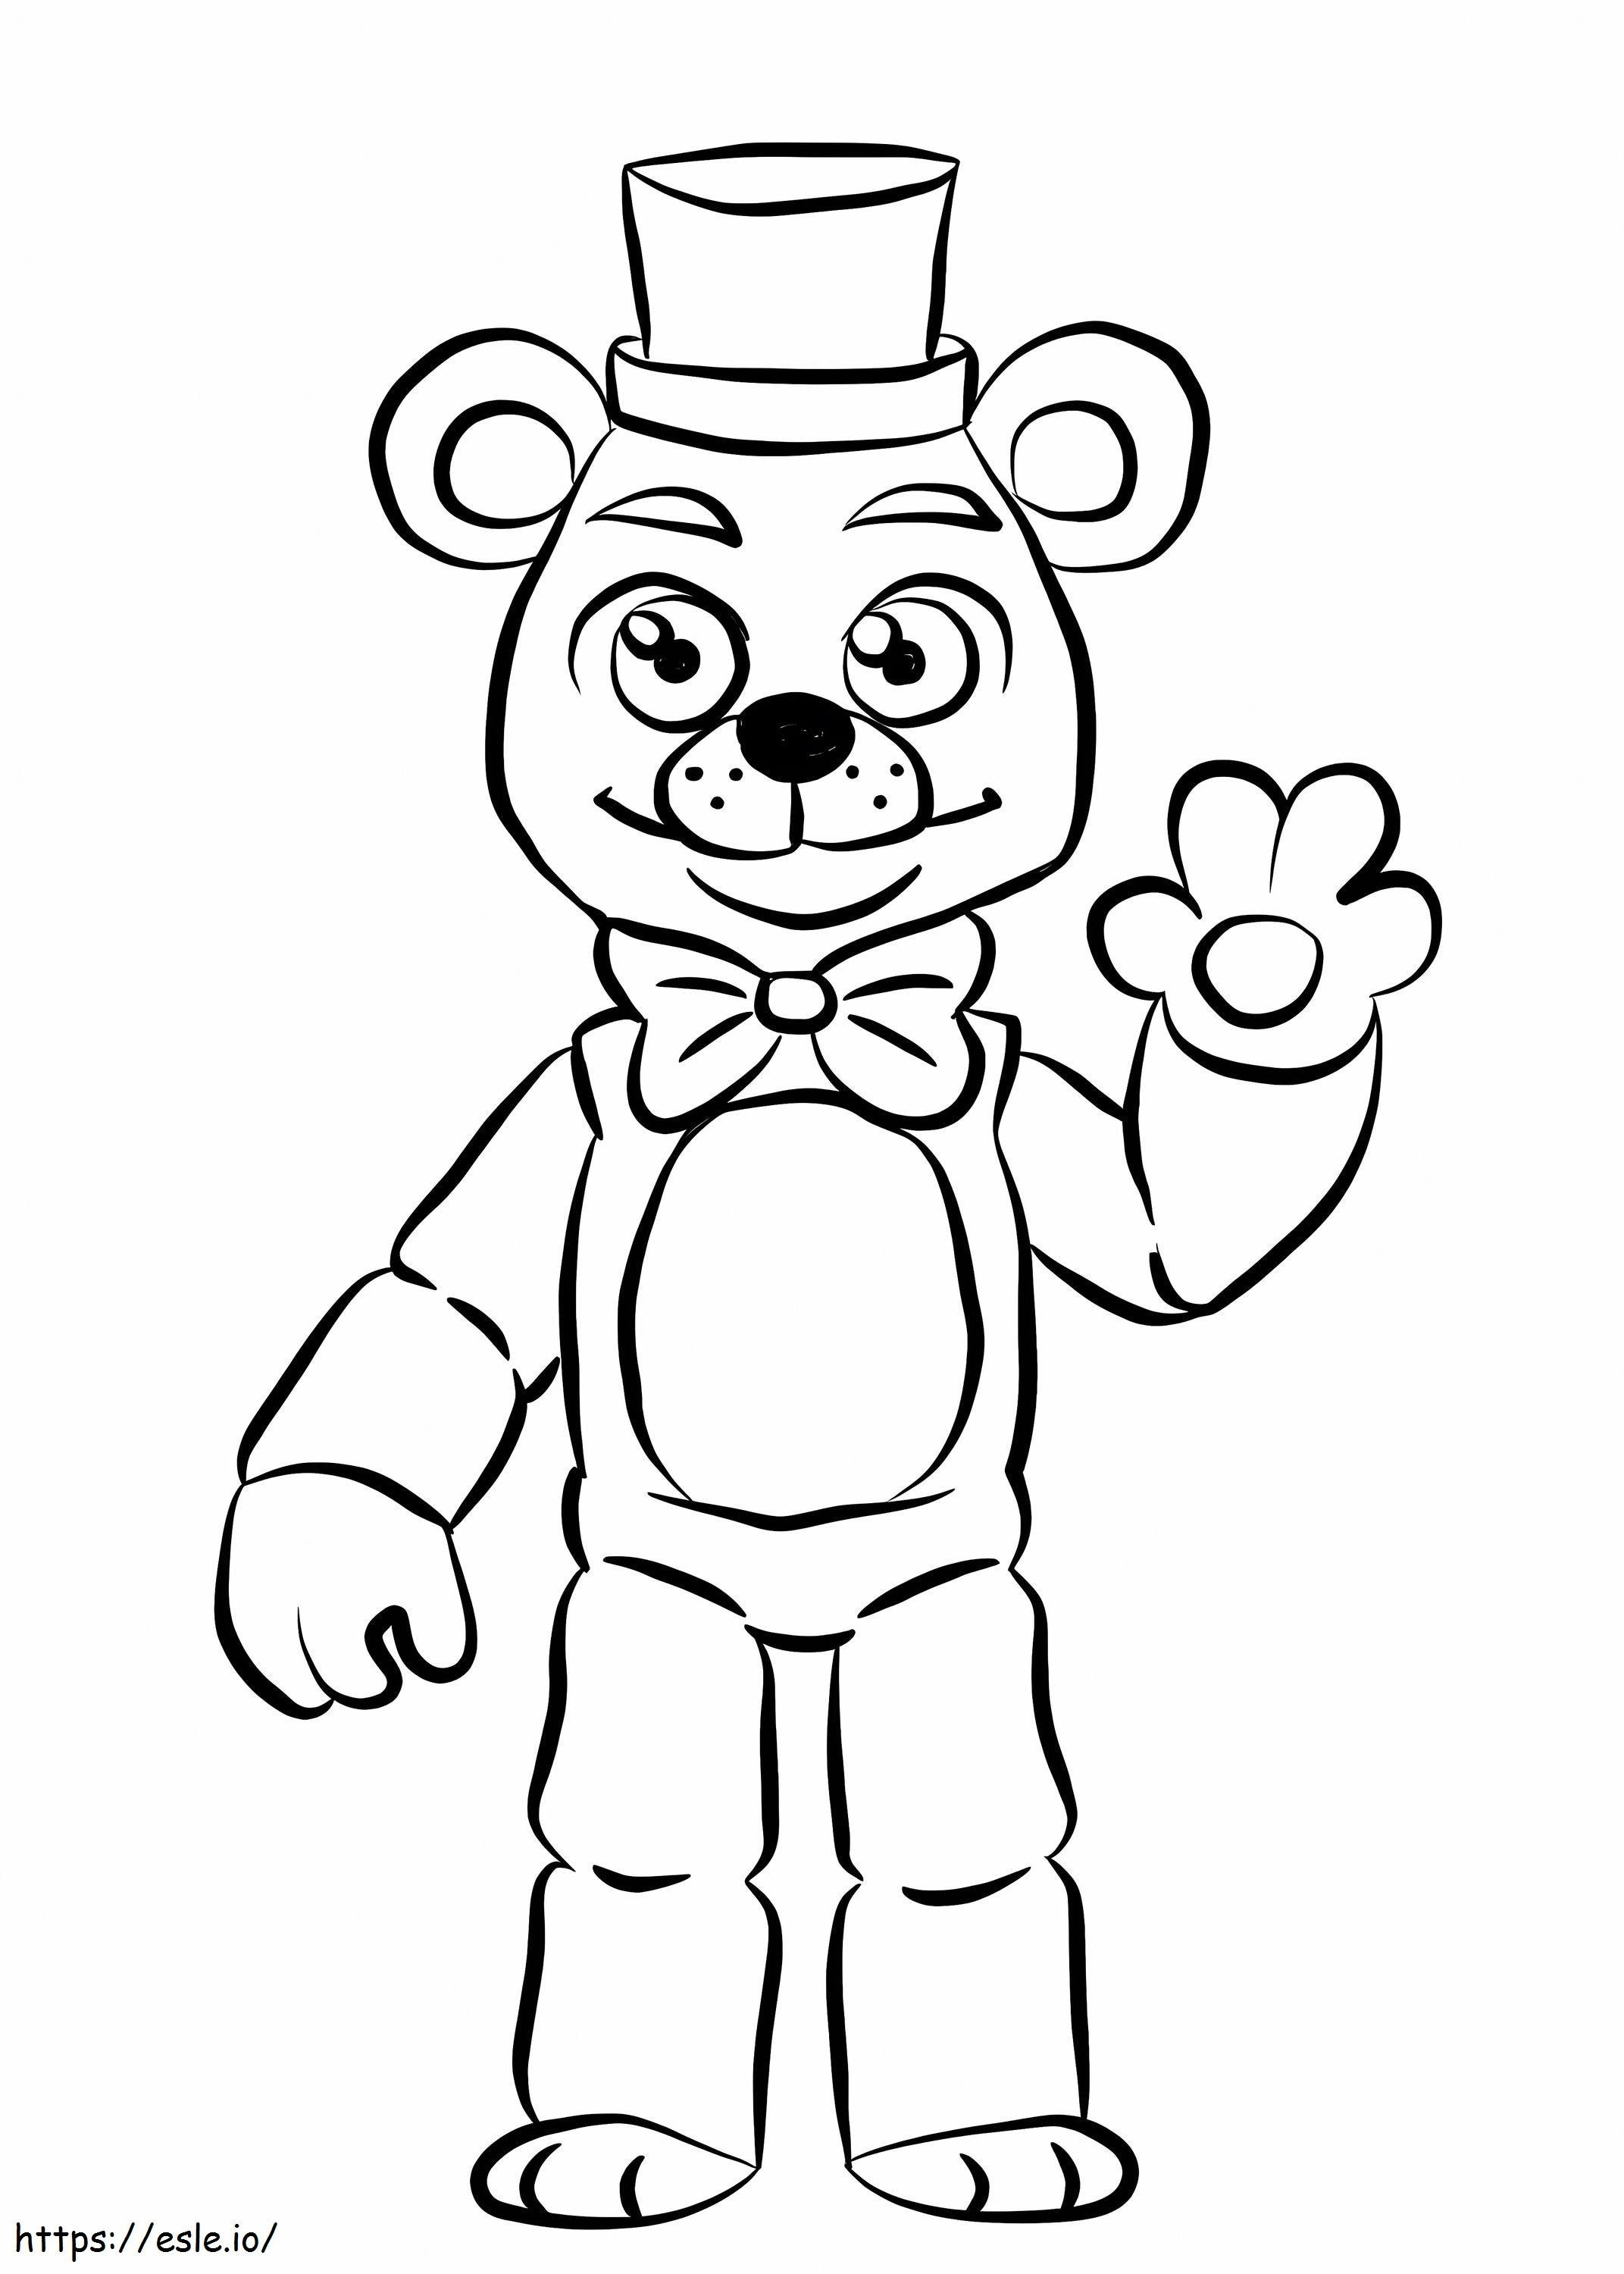 Urso Fnaf Fofo para colorir